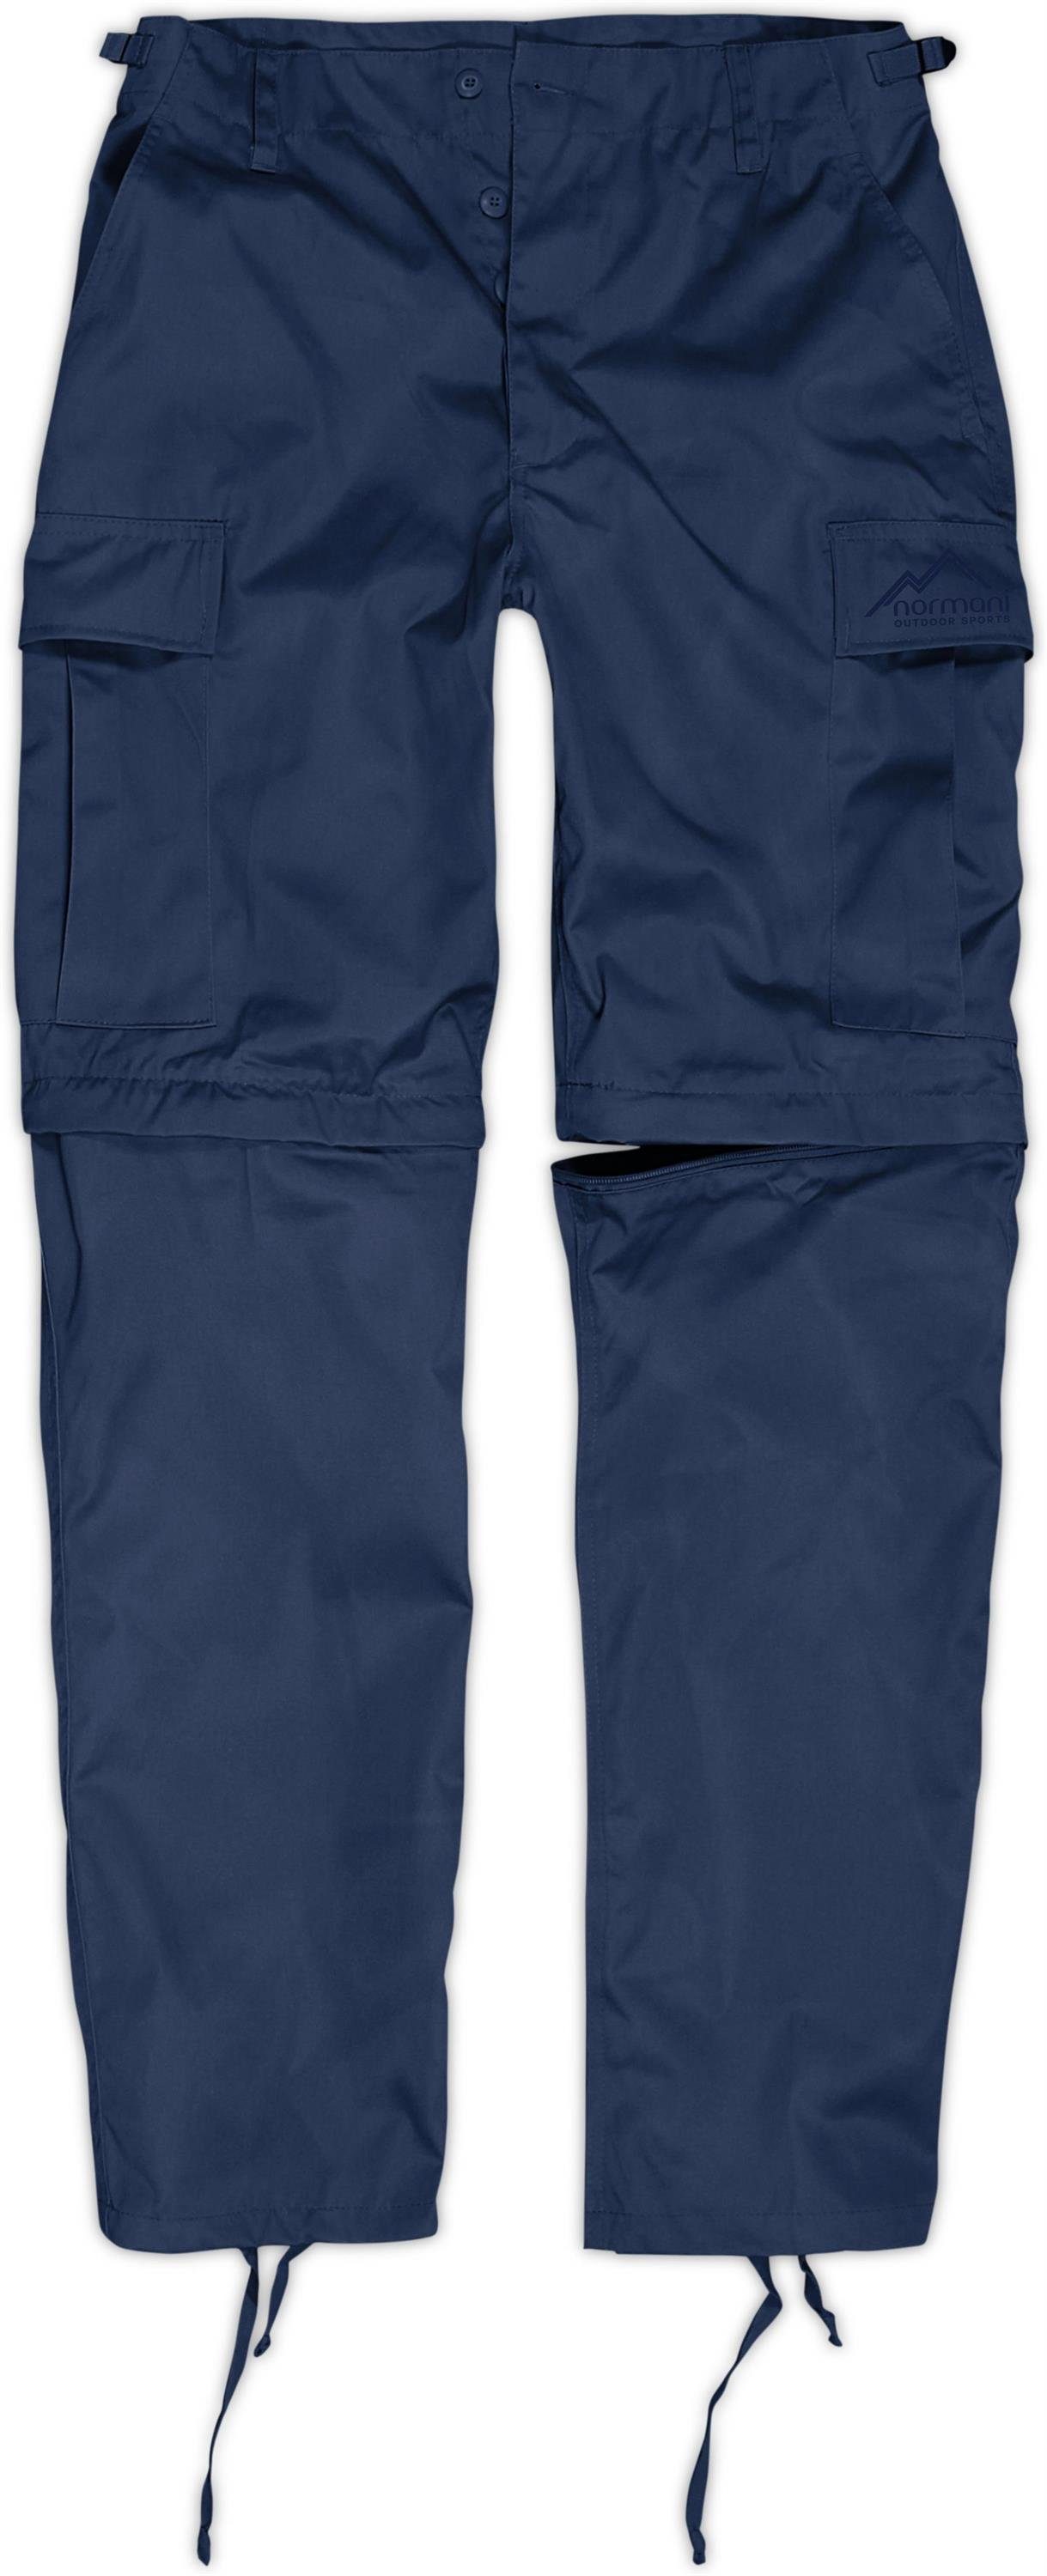 normani Zip-off-Hose Herren Feldhose Rangerhose 2-in-1 per mit abtrennbaren Reißverschluss Pioneer Hosenbeinen Outdoorhose Zip-Off Navy BDU